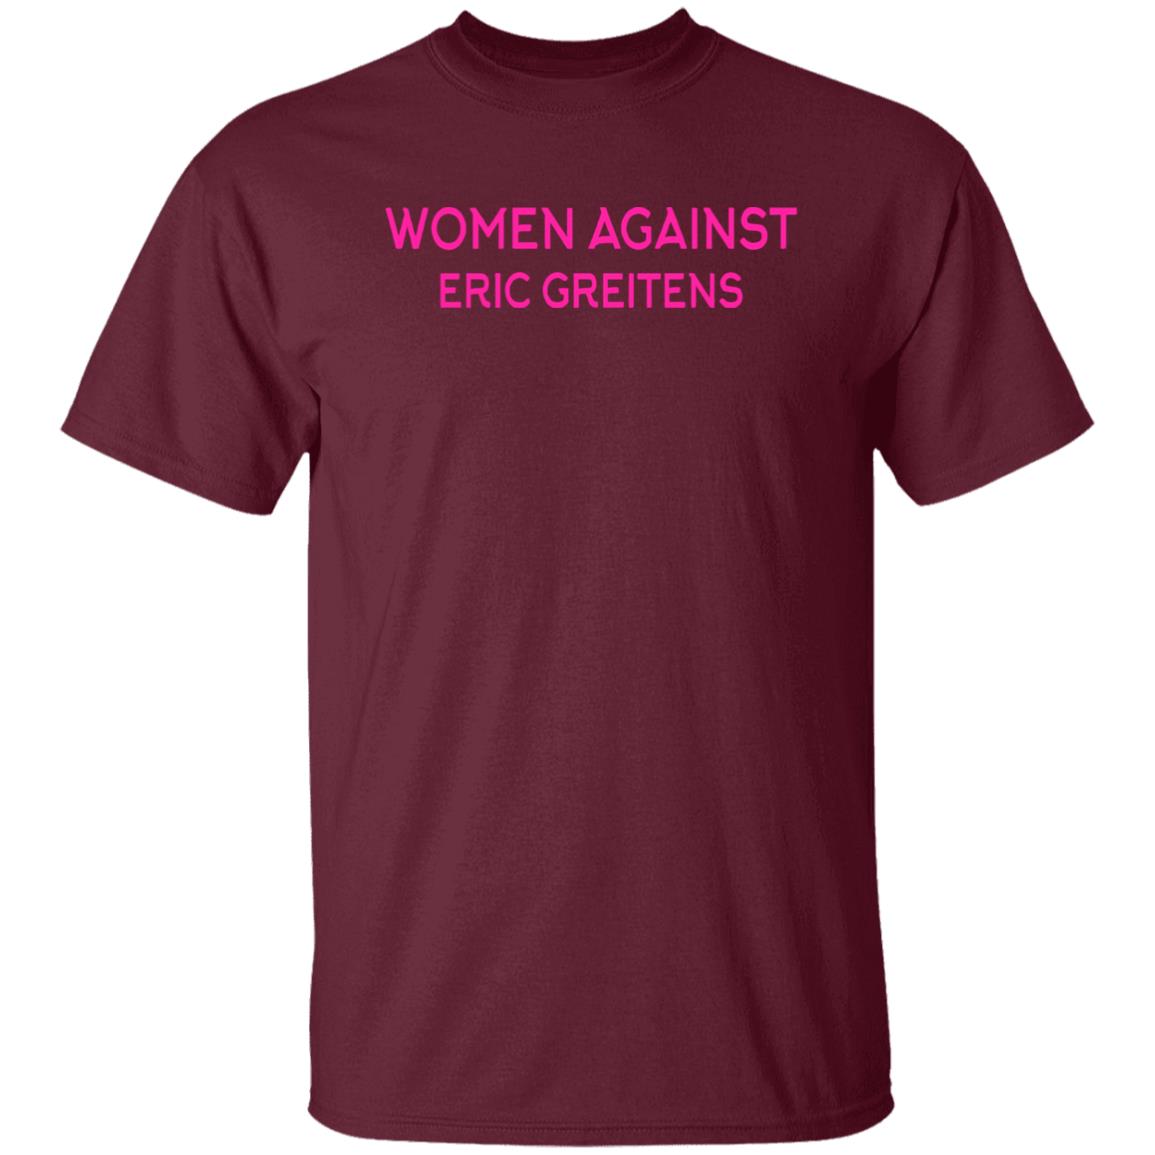 Women Against Eric Greitens Shirt Chrisedler3 Cornfedthreads Store